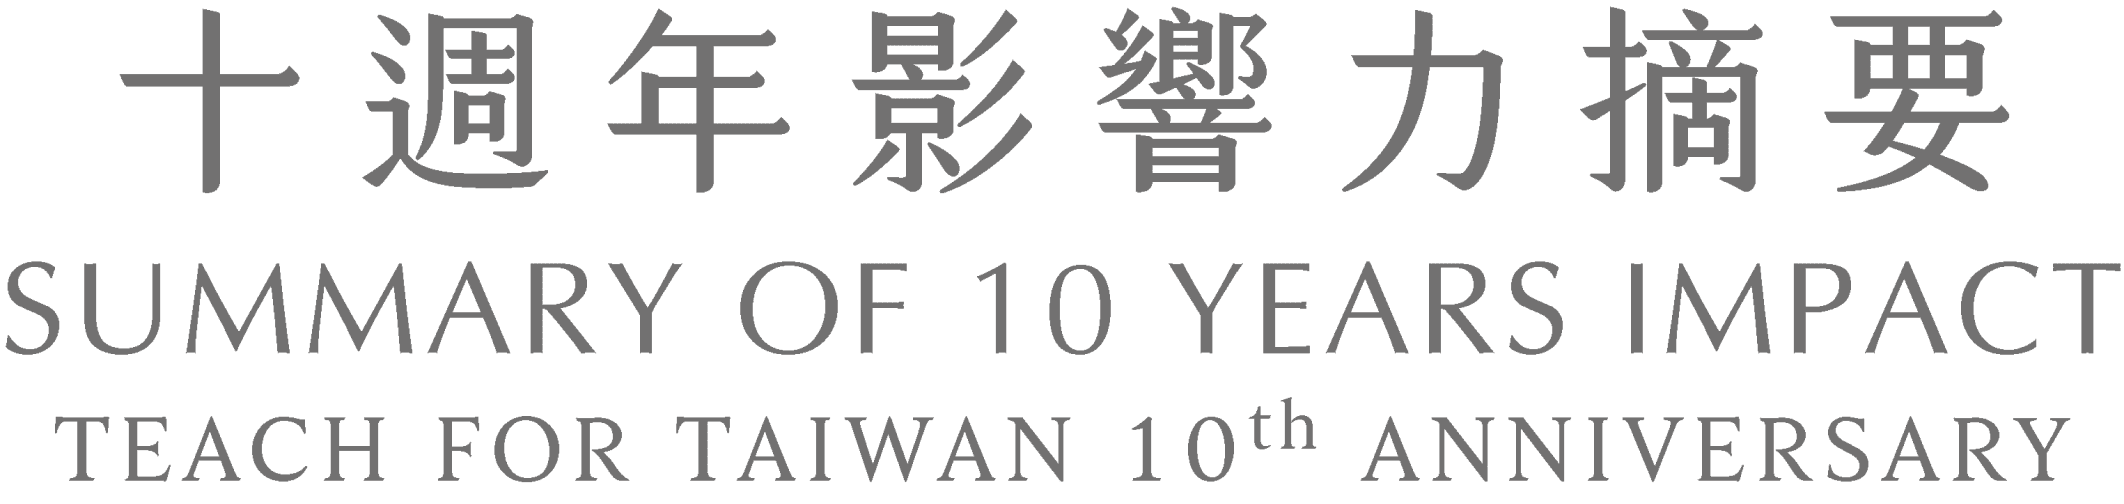 十週年影響力摘要 SUMMARY OF 10 YEARS IMPACT Teach for taiwan 10th anniversary